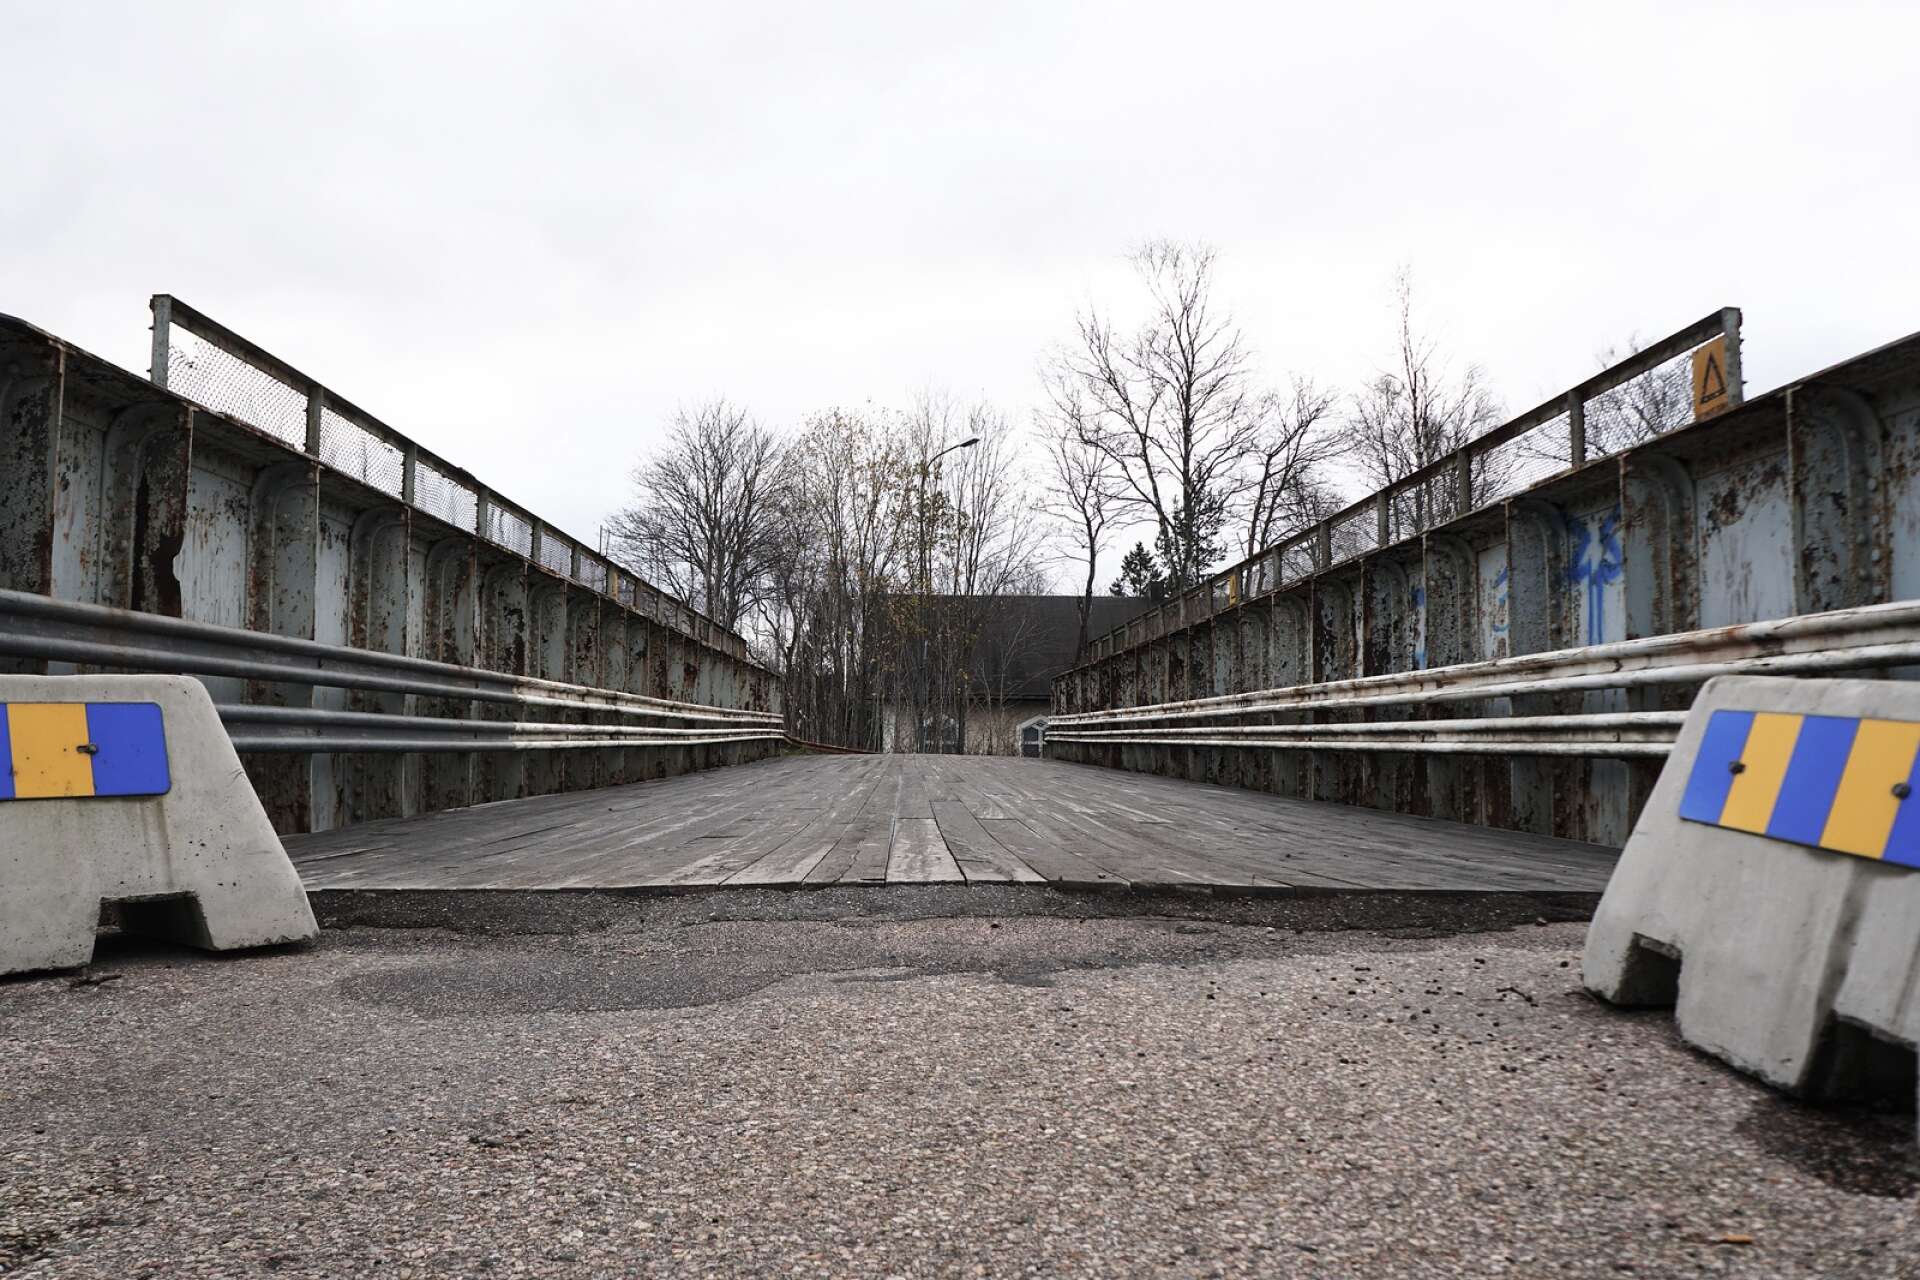 Järnvägsbron stängdes av för biltrafik 2019, men först 2025 kan arbetet med den nya bron påbörjas. Alla turer kring projektet gör att ilskan växer hos björneborgarna.